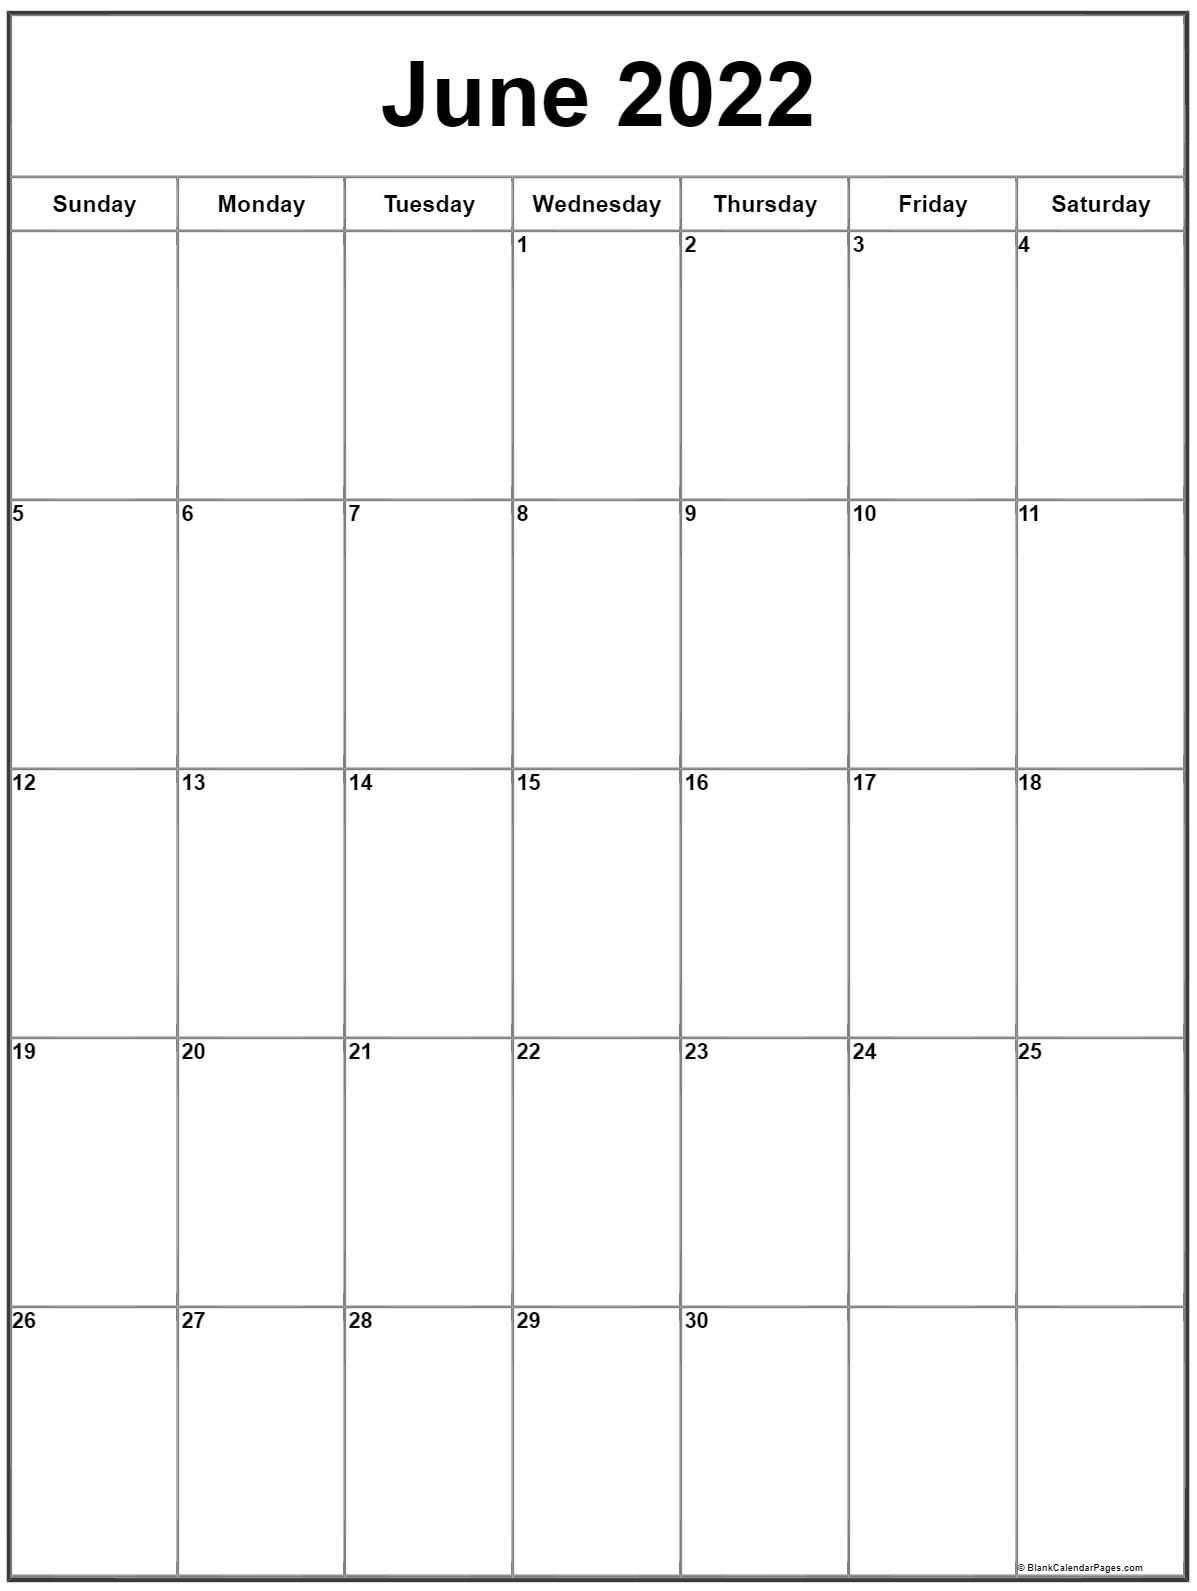 Get June 2022 Calendar Free Printable